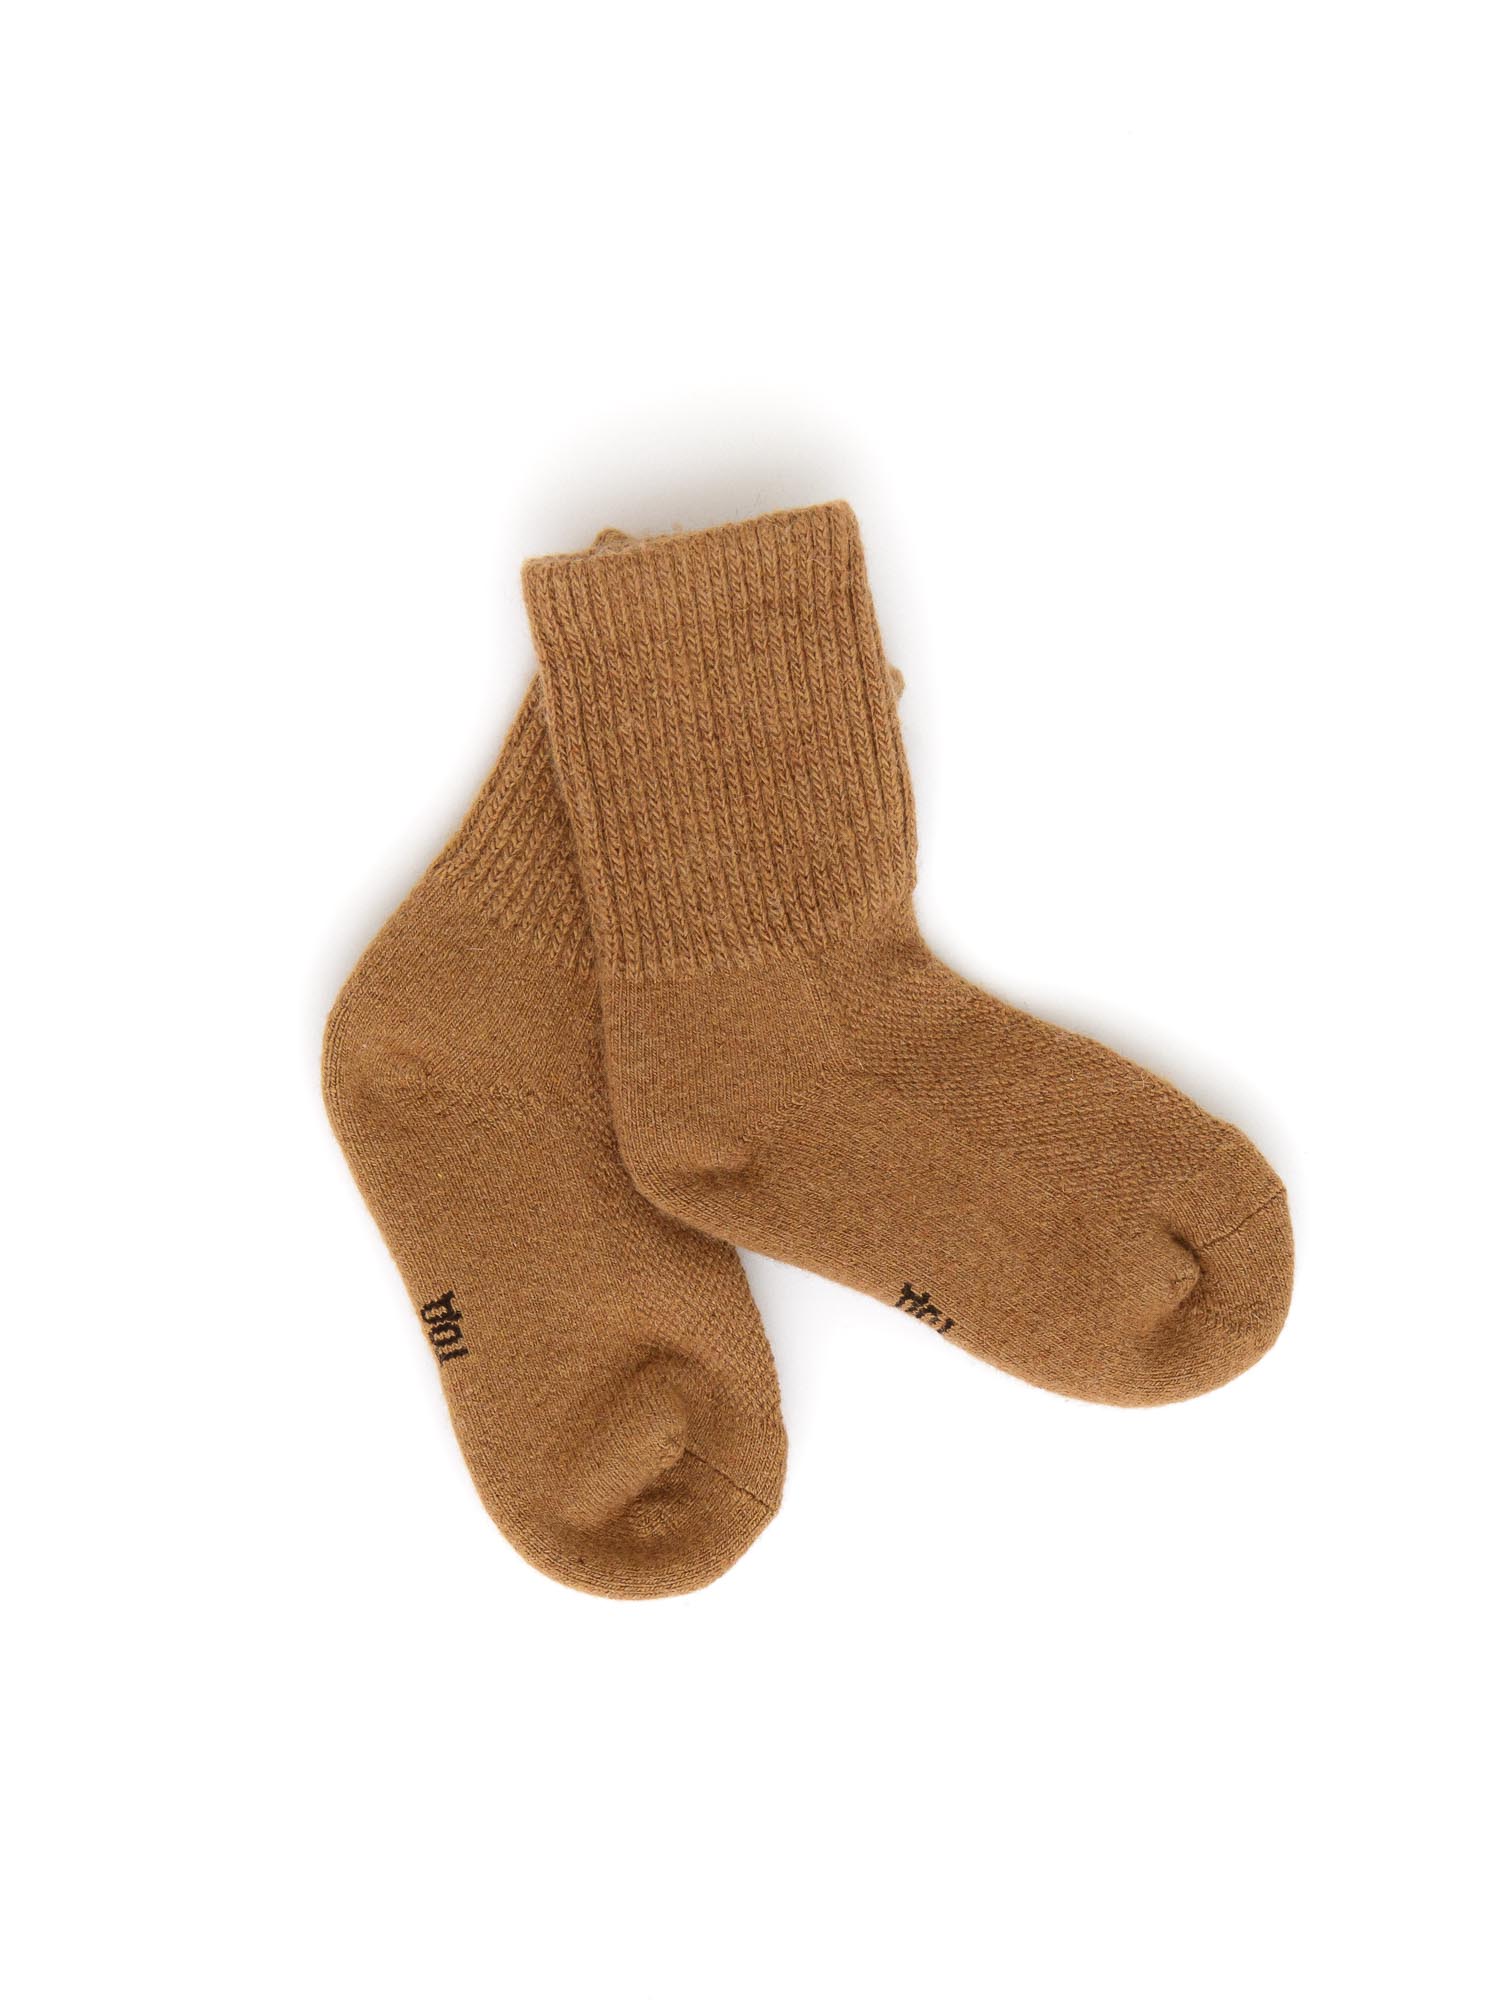 Детские носки из монгольской шерсти 5Р ТОД ОЙМС ХХК, цвет рыжий, размер 5 (18-20 см) - фото 1